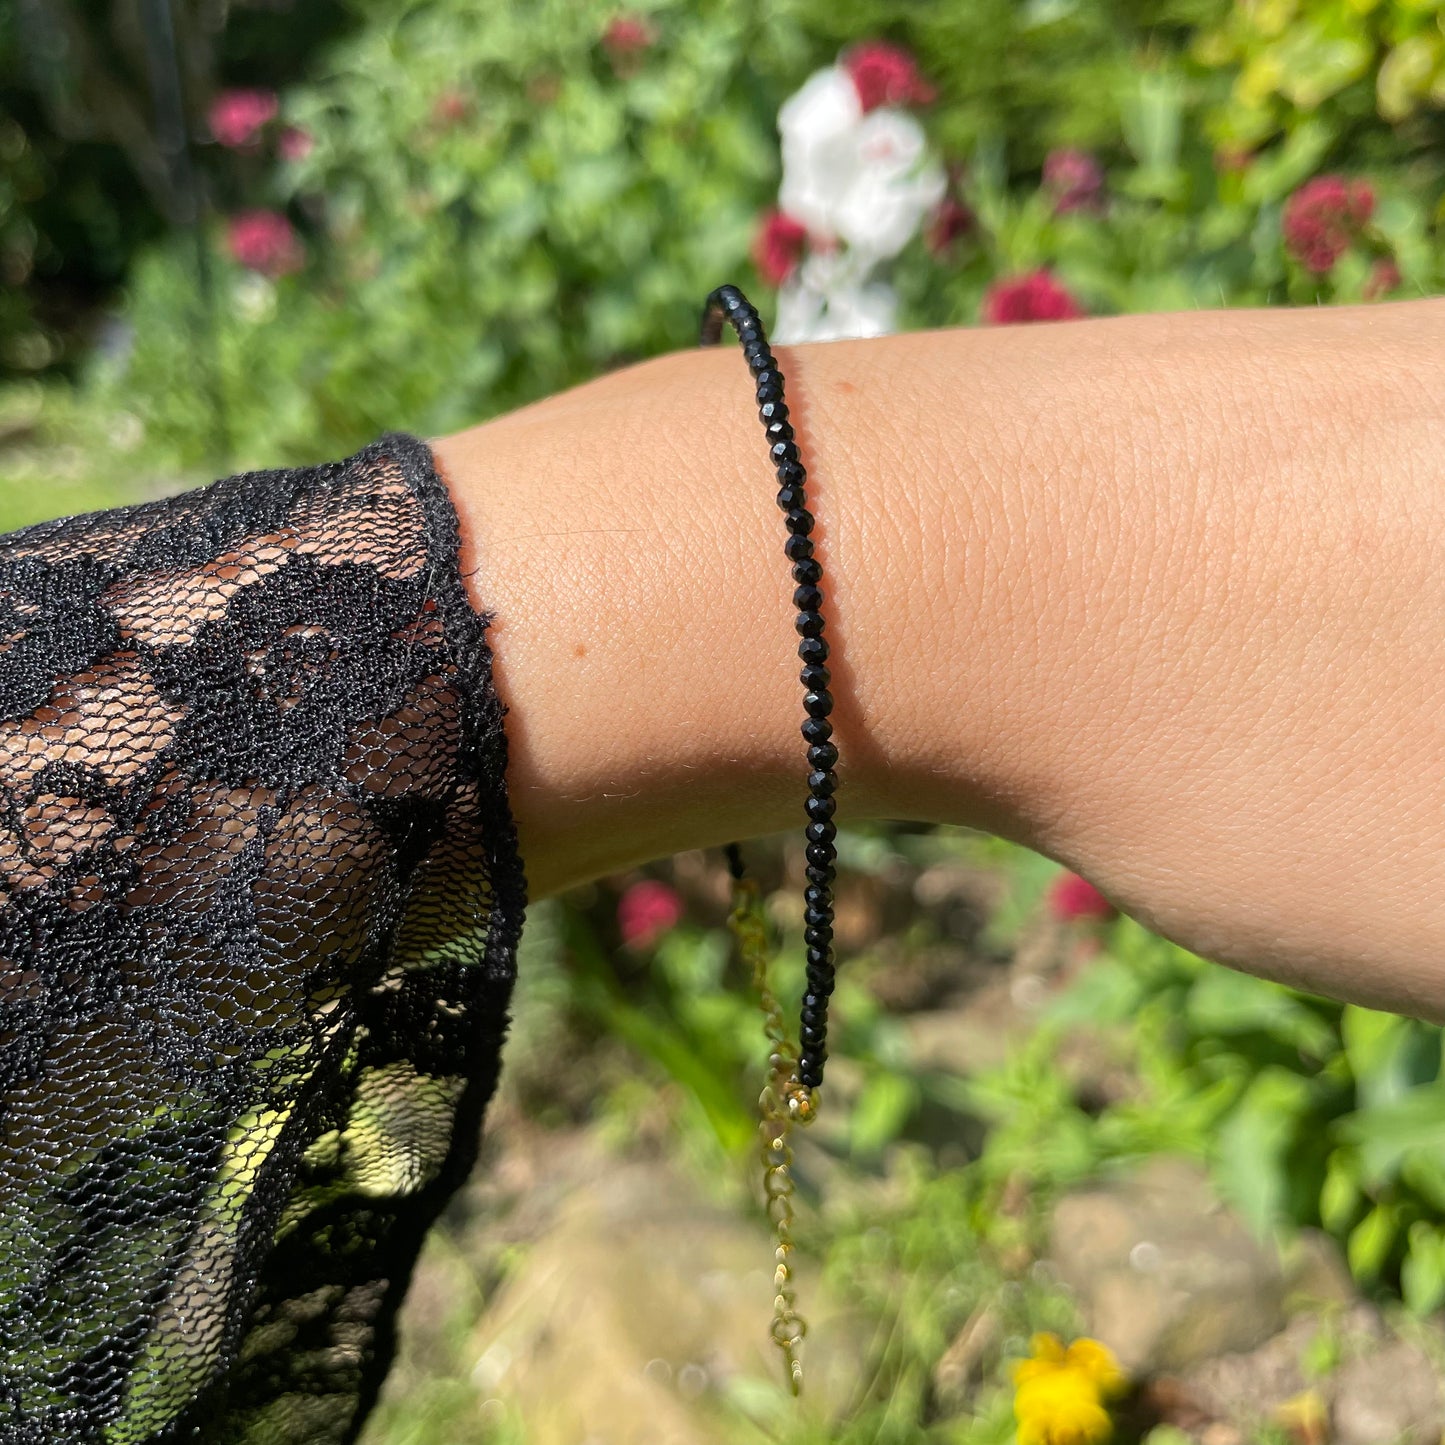 Black Tourmaline Adjustable Minimalist Bracelet